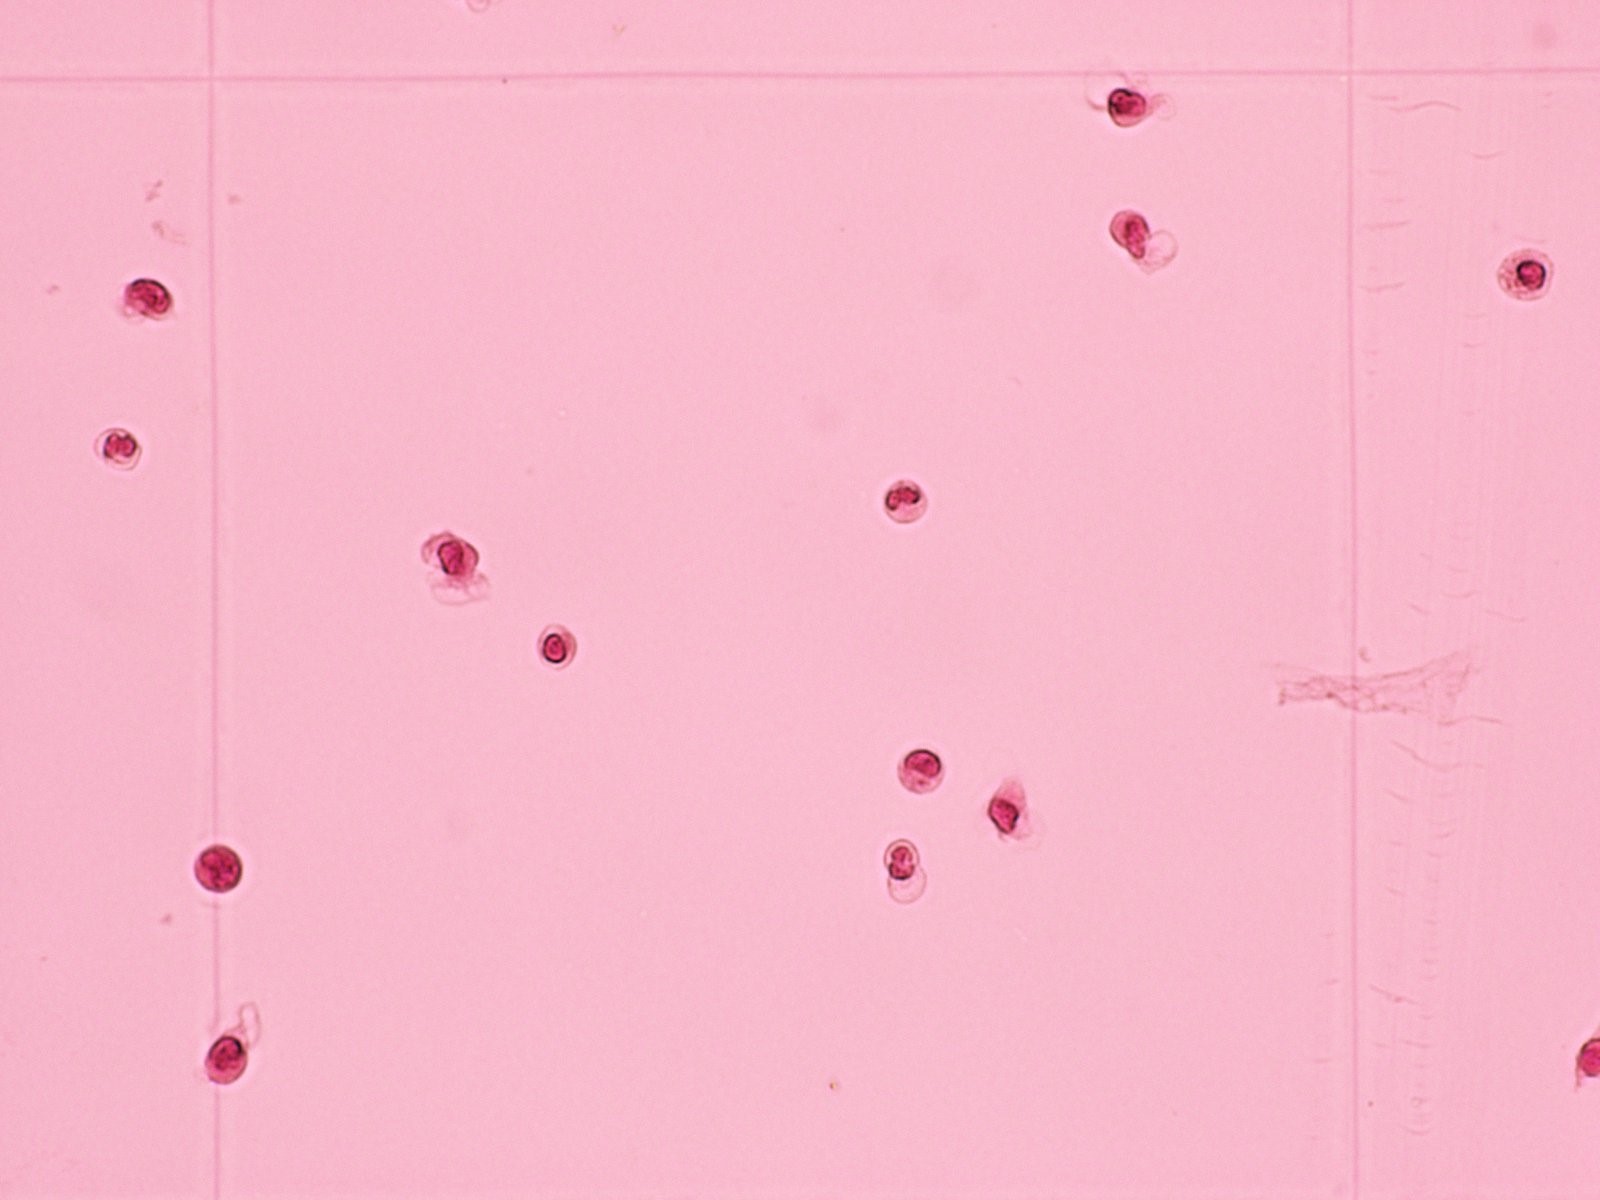 髄液中に見られる細胞（白血球）の画像